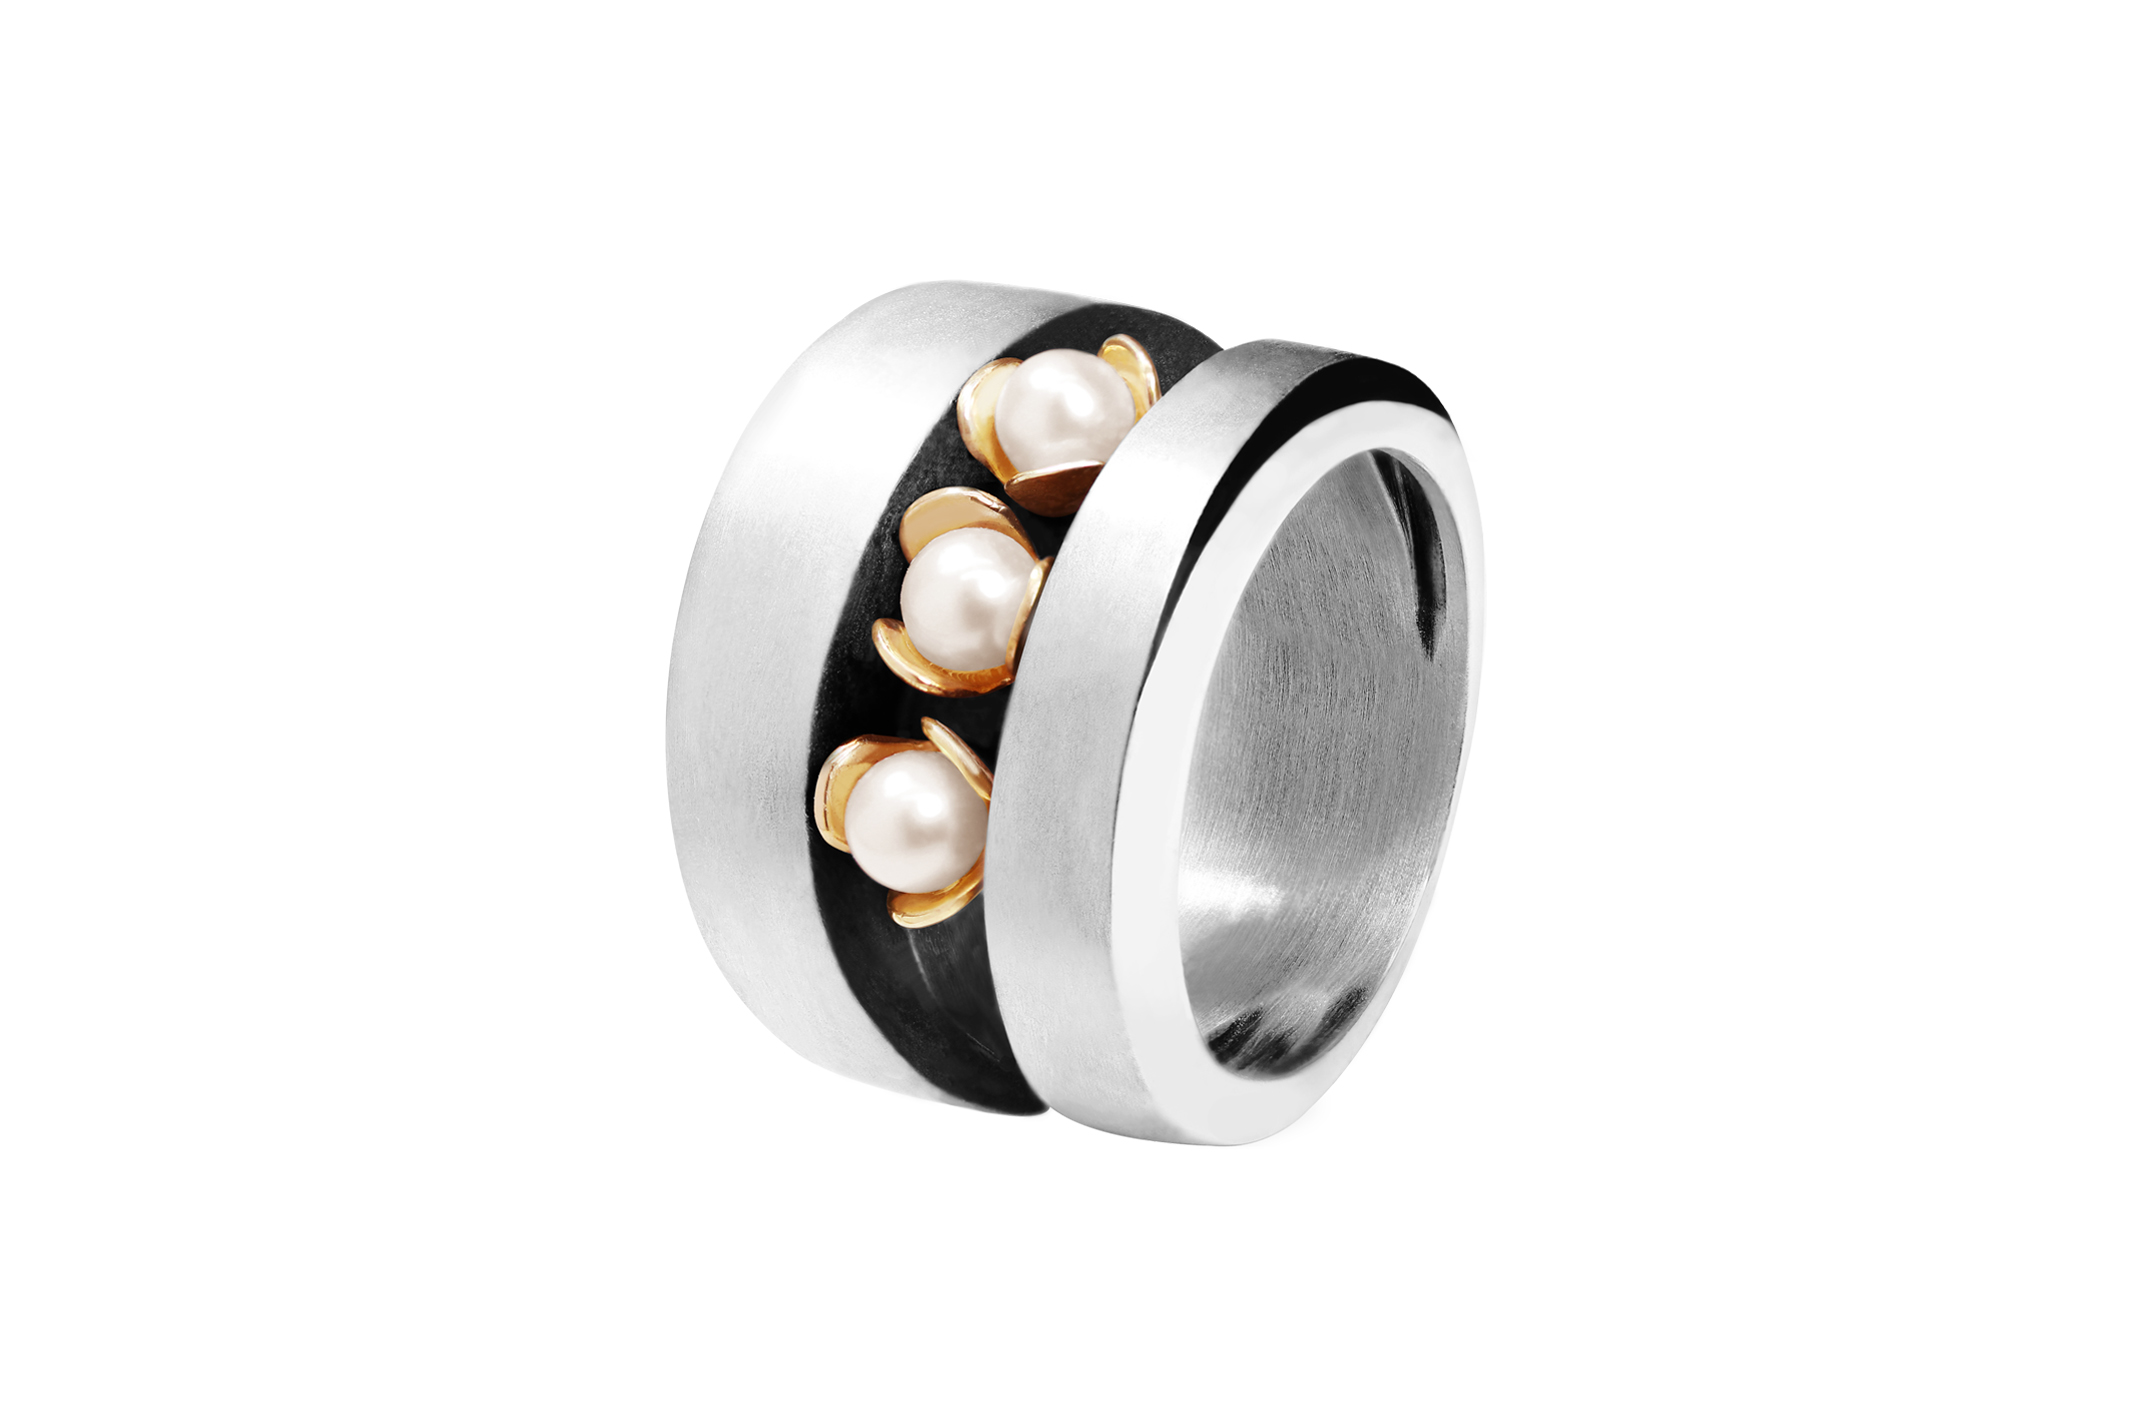 Joia: anel;Material: prata 925 e ouro 9kt;Peso: 11.40 gr (prata) e 1.10 gr (ouro);Pedras: pérolas naturais;Cor: bicolor;Género: mulher